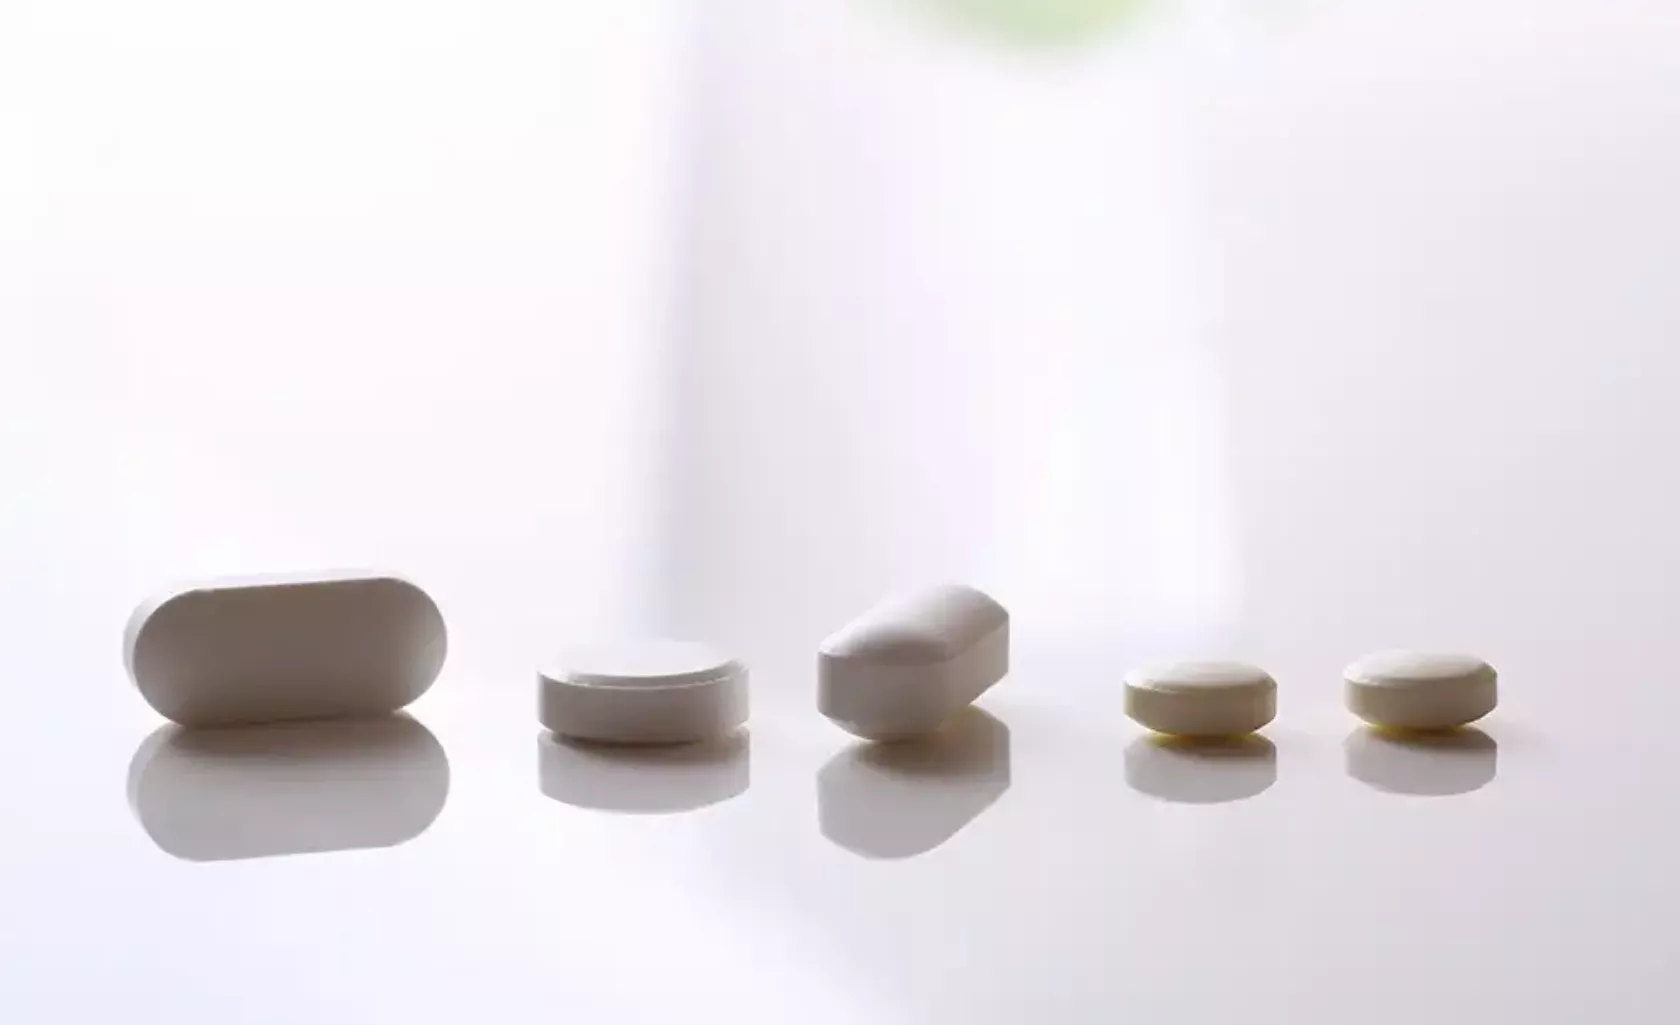 Weiße Kapseln und Tabletten auf einem glänzenden weißen Tisch.